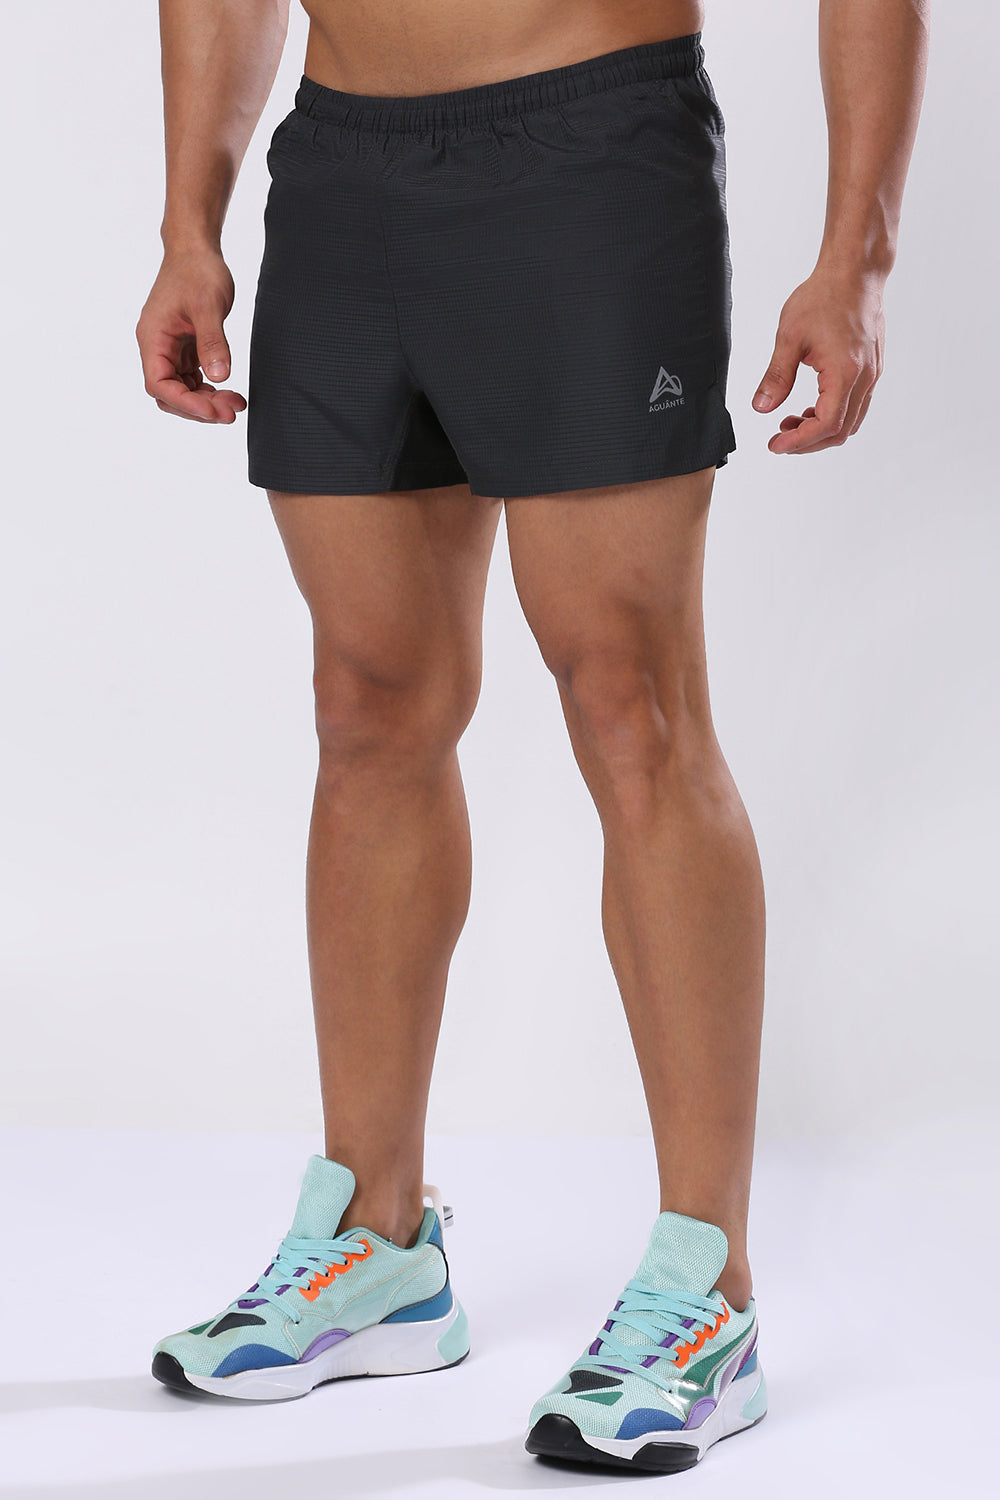 Aerospeed Men's 3.5" Running Shorts